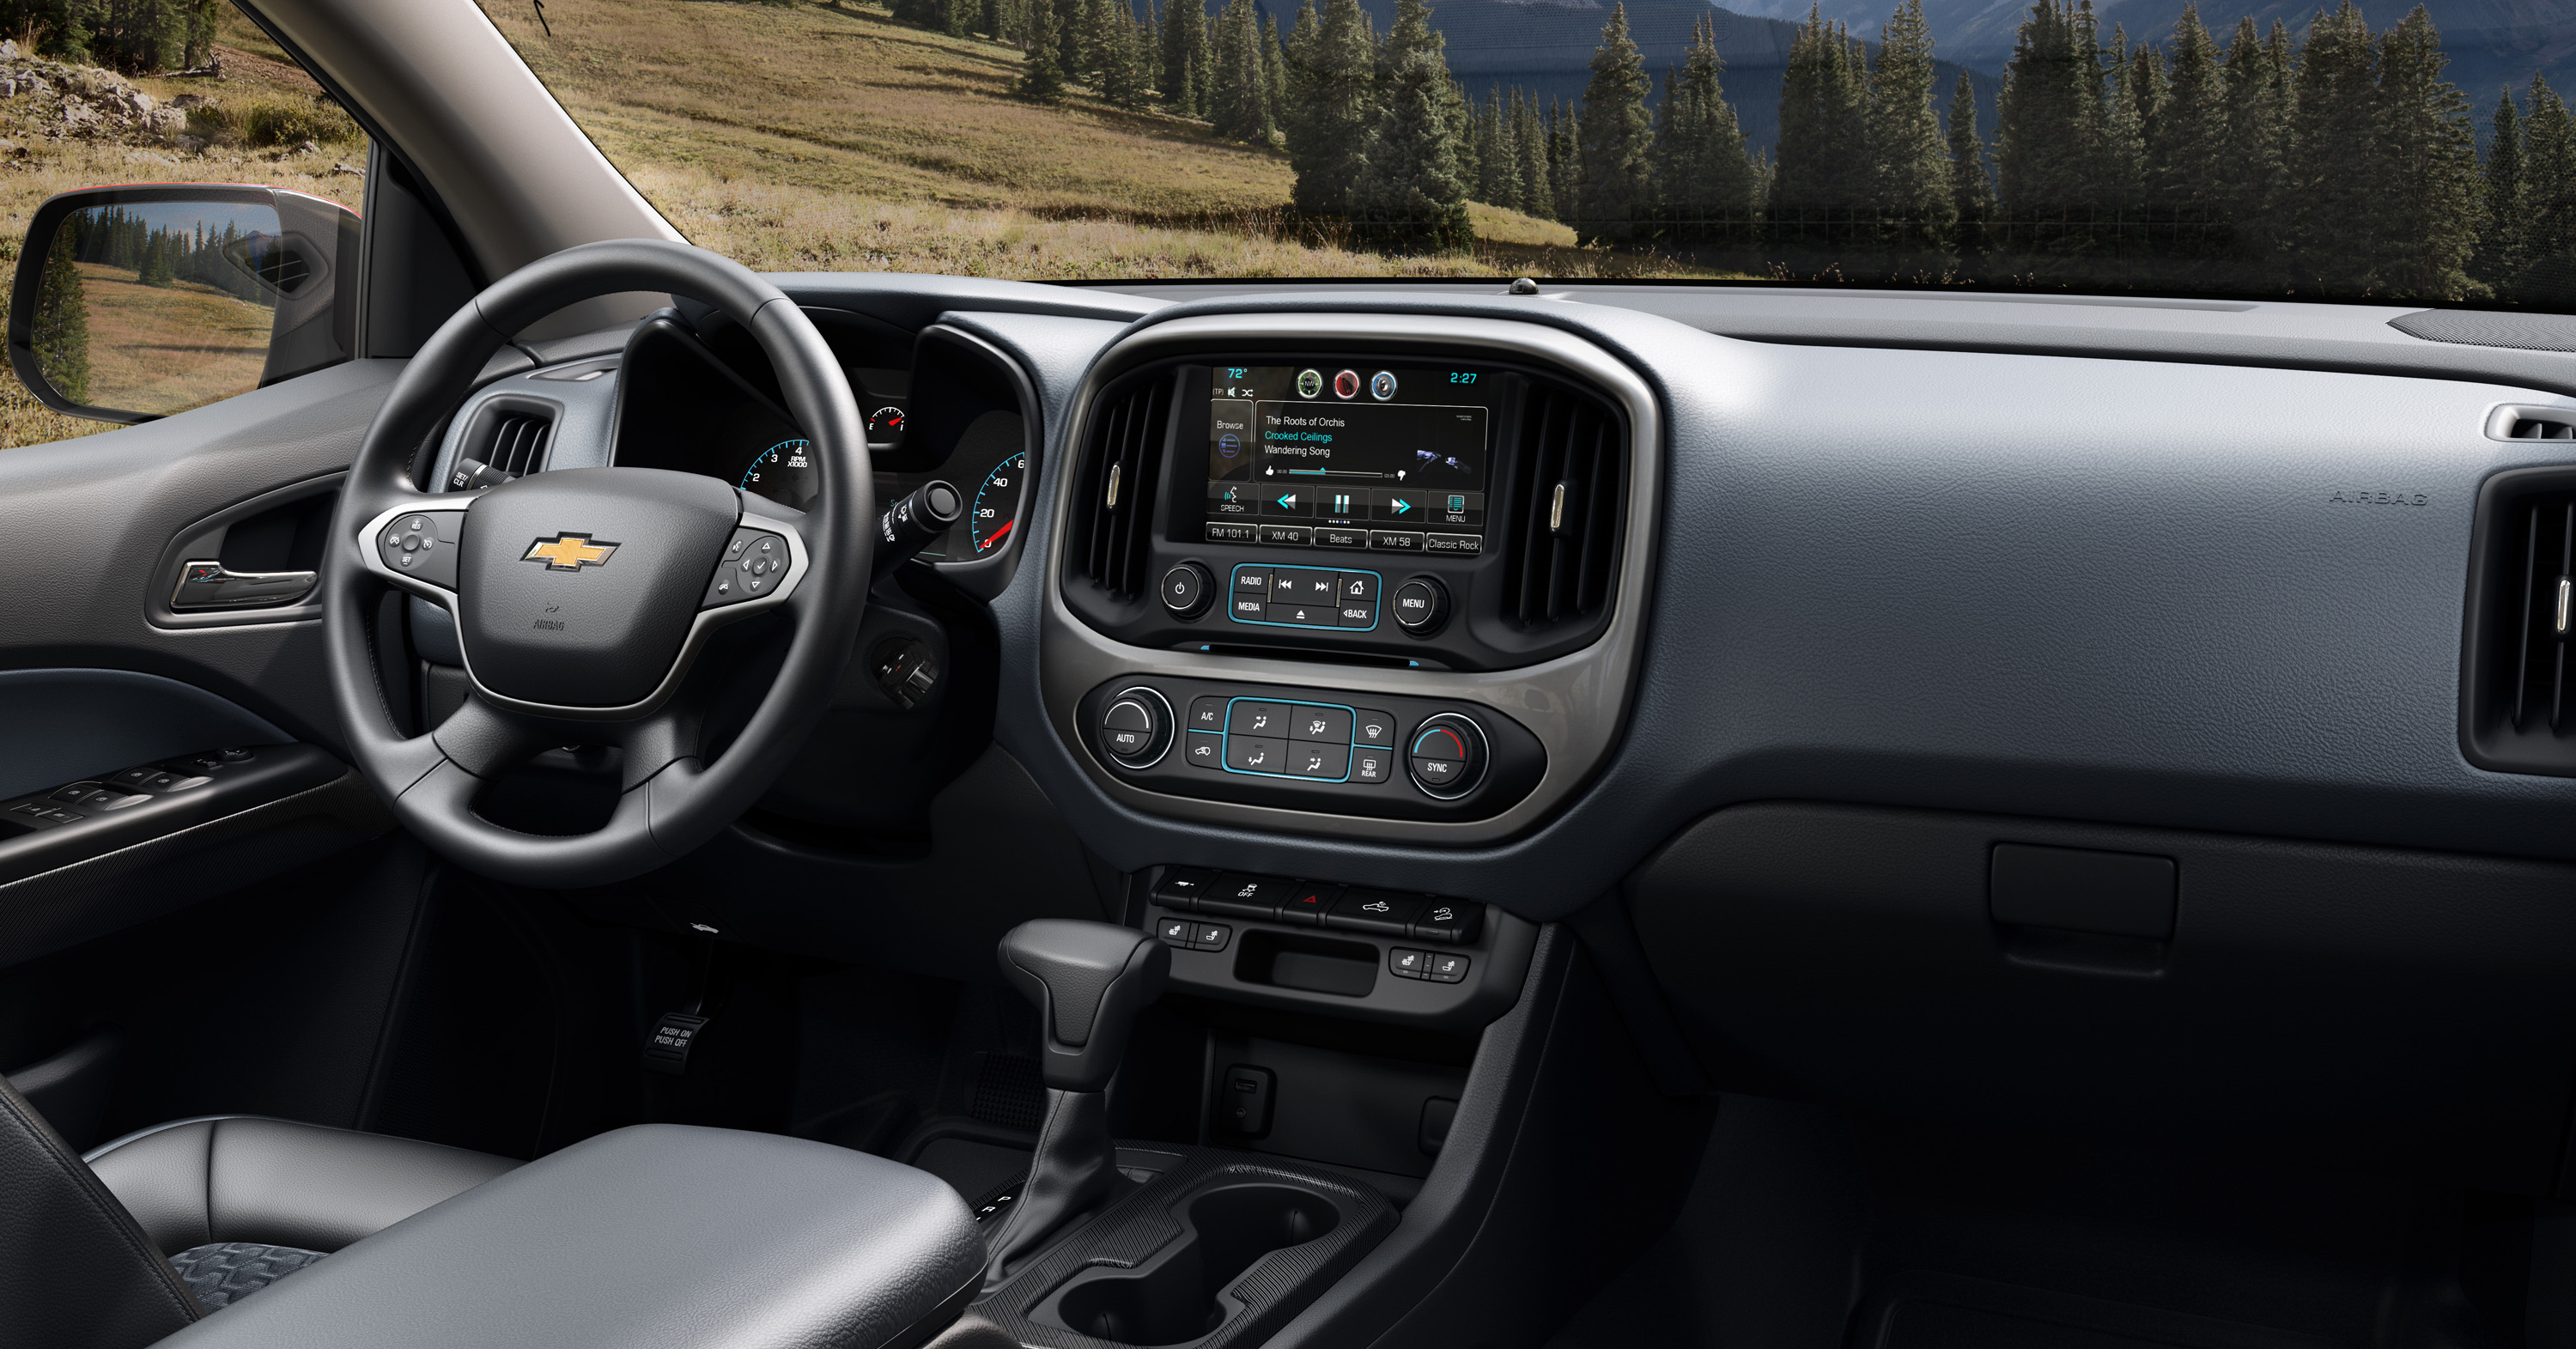 2015 Chevrolet Colorado Information And Photos Momentcar